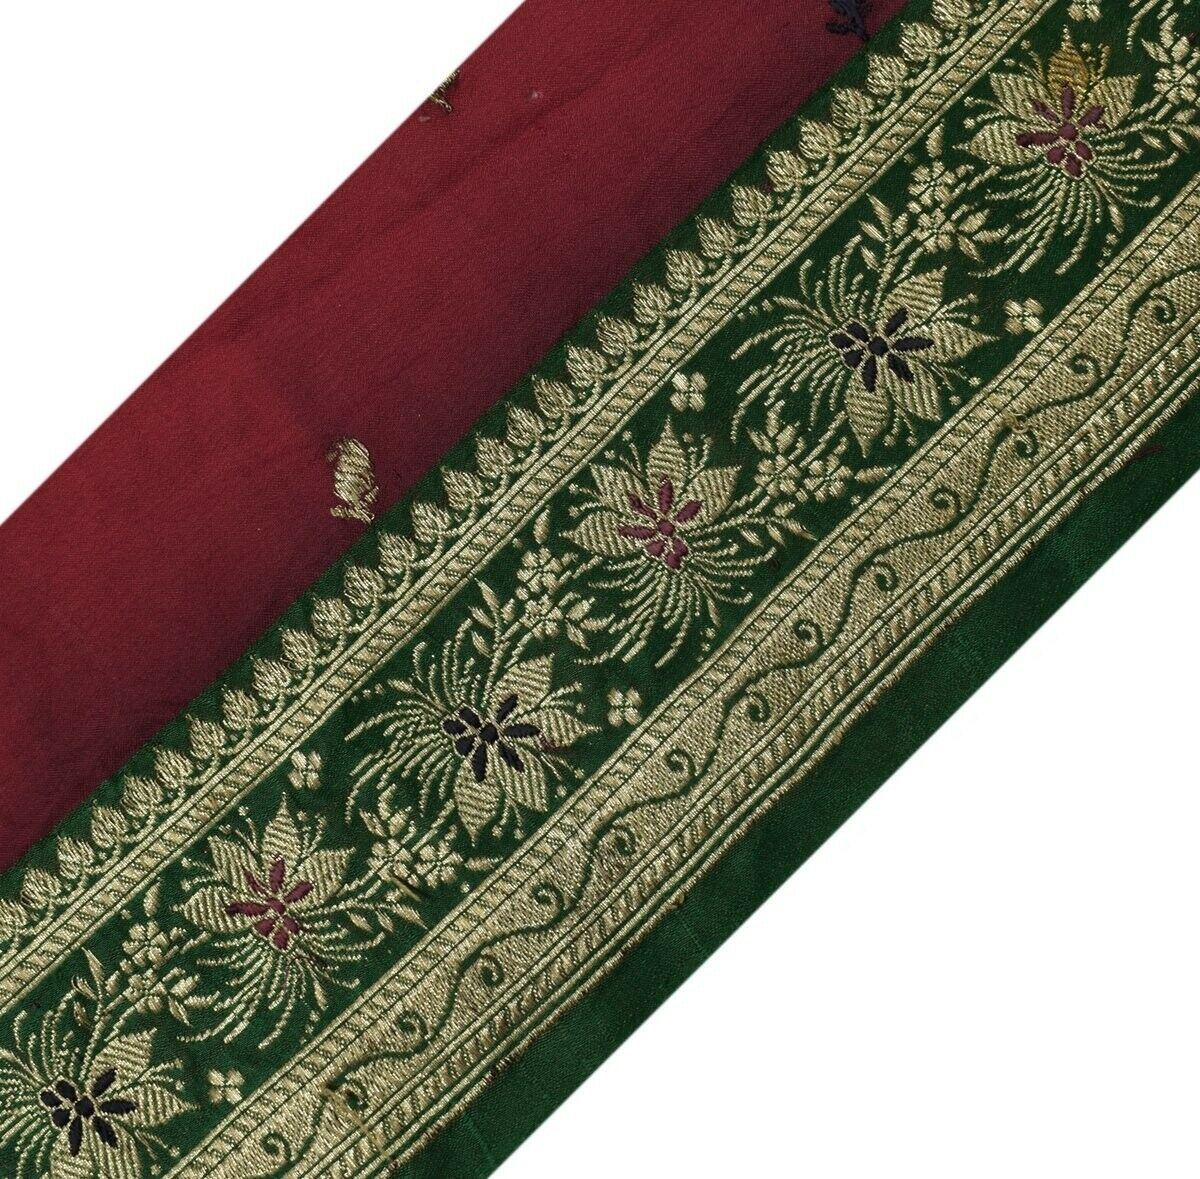 Vintage Sari Border Indian Craft Trim Zari Woven Banarasi Brocade Green Lace